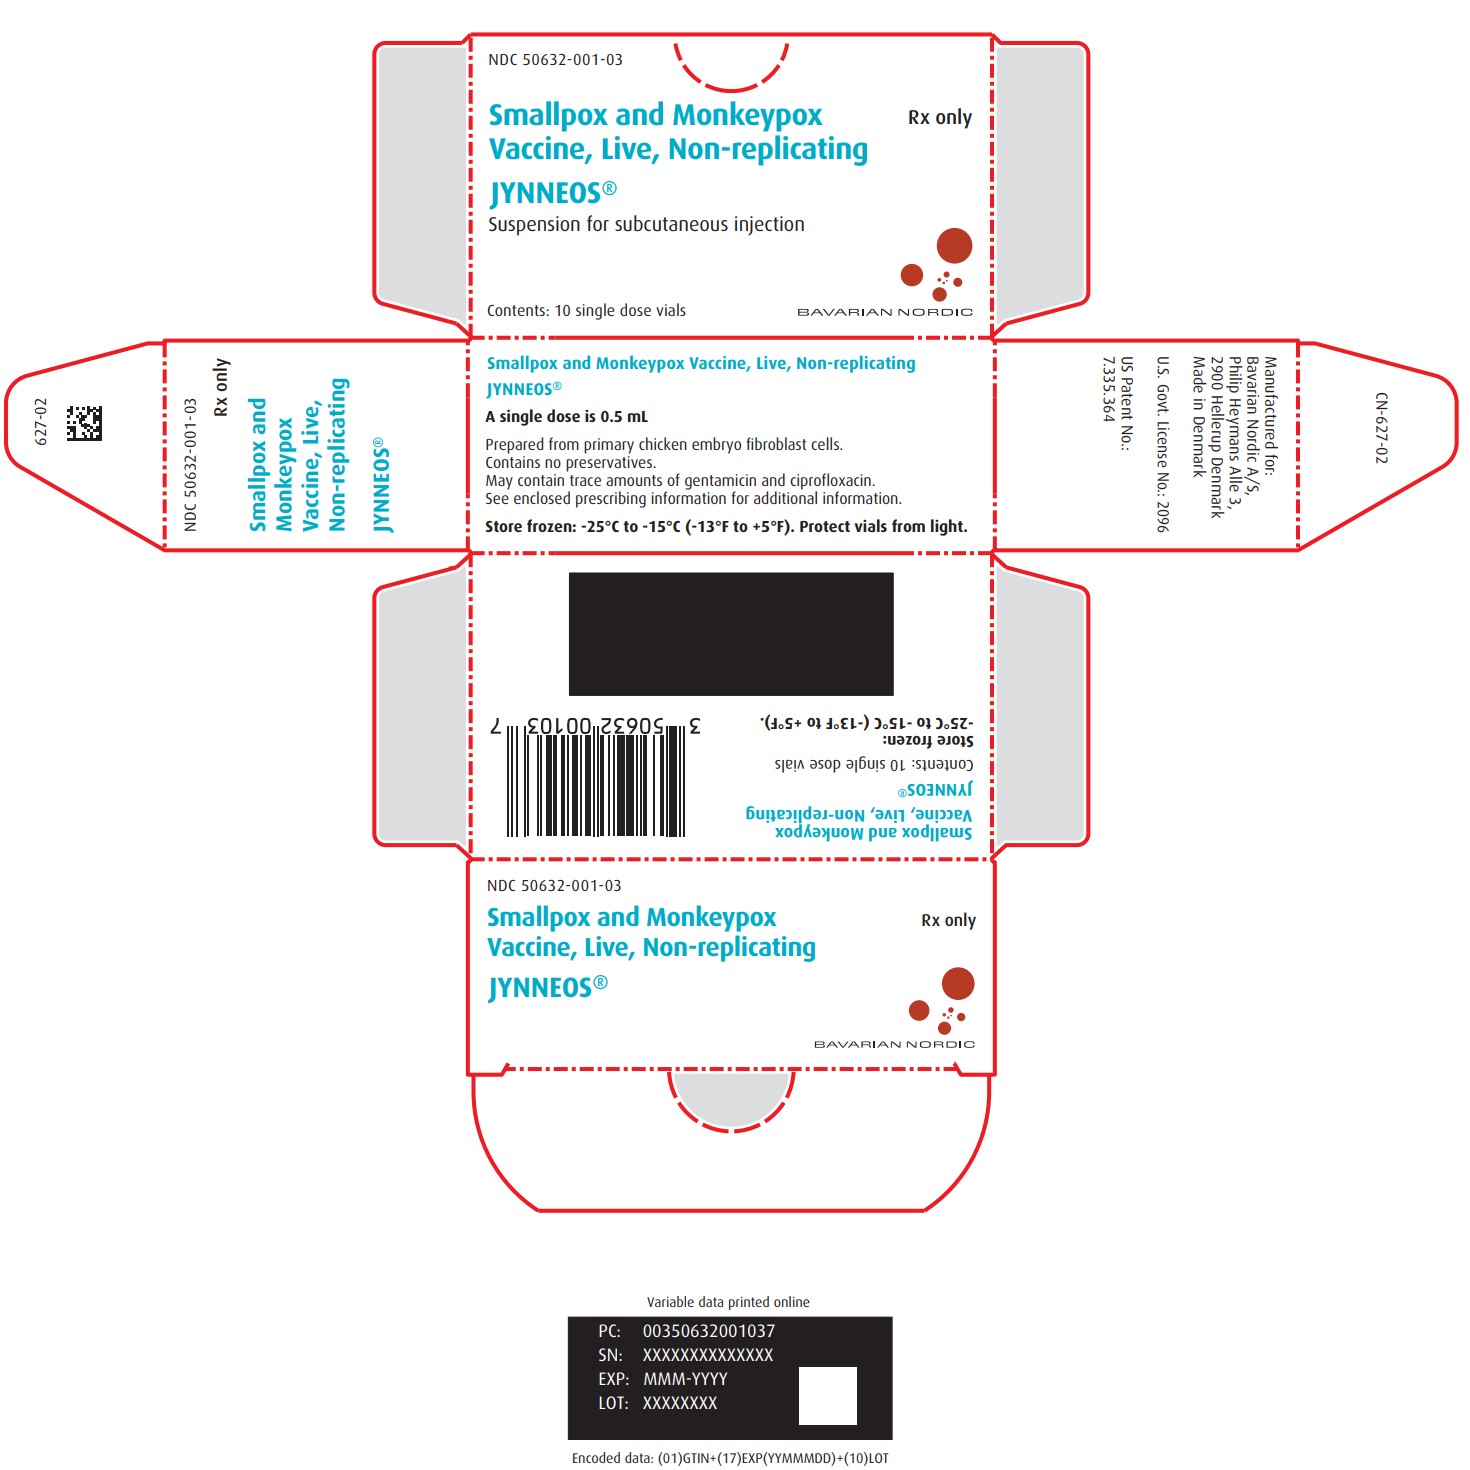 Principal Display Panel - Carton Label - 10 vials